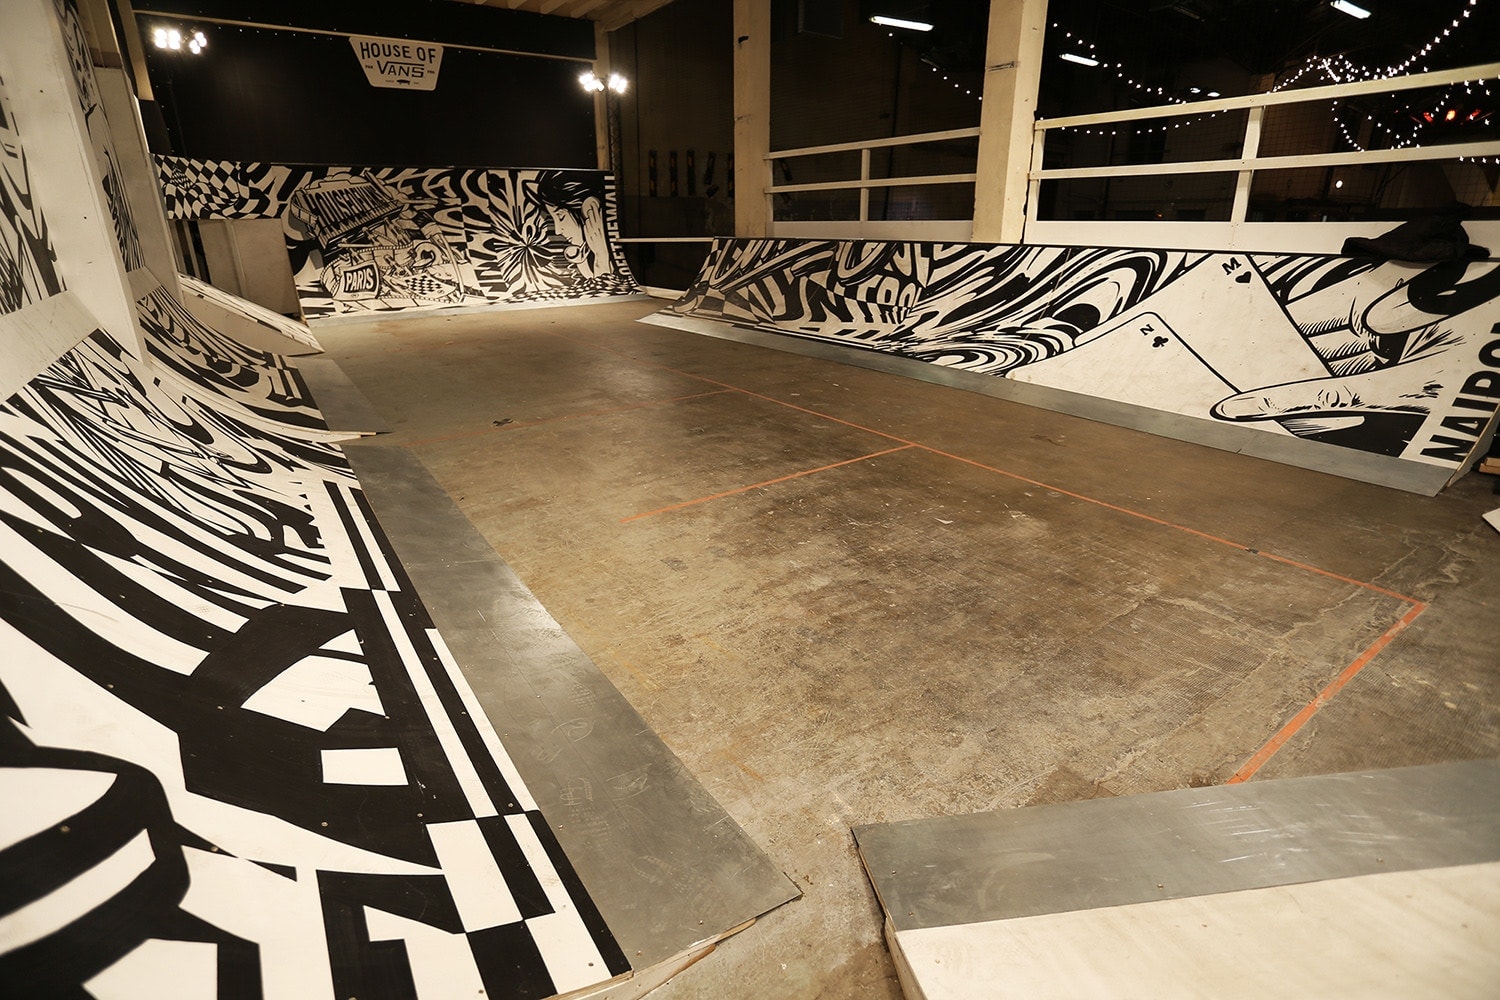 House of Vans Paris Exhibition Workshops Skateboard Ramps Michael Burnett